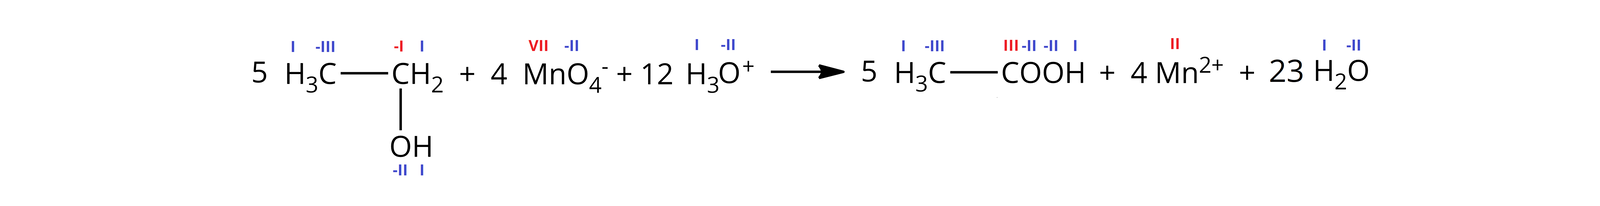 Ilustracja przedstawiająca zapis jonowy skrócony reakcji etanolu z manganianem(&lt;math aria‑label="siedem"&gt;VII) potasu w środowisku kwasowym. W zapisie uwzględniono wartościowości podane jako cyfry rzymskie nad poszczególnymi atomami, wszystkie atomy wodoru w zapisie znajdują się na pierwszym stopniu utlenienia, a atomy tlenu na minus drugim. Równanie reakcji. Pięć cząsteczek etanolu zbudowanego z grupy metylowej CH3, w której atom węgla znajduje się na minus trzecim stopniu utlenienia i łączy się za pomocą wiązania pojedynczego z grupą metylenową CH2 z węglem na minus pierwszym stopniu utlenienia podstawionym grupą hydroksylową OH. Dodać cztery aniony manganianowe(&lt;math aria‑label="siedem"&gt;VII) MnO4-, w których atom manganu znajduje się na siódmym stopniu utlenienia. Dodać dwanaście jonów hydroniowych H3O+. Strzałka w prawo, za strzałką pięć cząsteczek kwasu octowego CH3COOH zbudowanego z grupy metylowej CH3, w której atom węgla znajduje się na minus trzecim stopniu utlenienia i jest związany za pomocą wiązania pojedynczego z atomem węgla grupy karboksylowej COOH na trzecim stopniu utlenienia. Dodać cztery kationy manganu na drugim stopniu utlenienia Mn2+. Dodać dwadzieścia trzy cząsteczki wody H2O. Podsumowując zapis bez wartościowości jest następujący. 5 CH3CH2OH+4 MnO4-+12 H3O+→5 CH3COOH+4 Mn2++23 H2O.